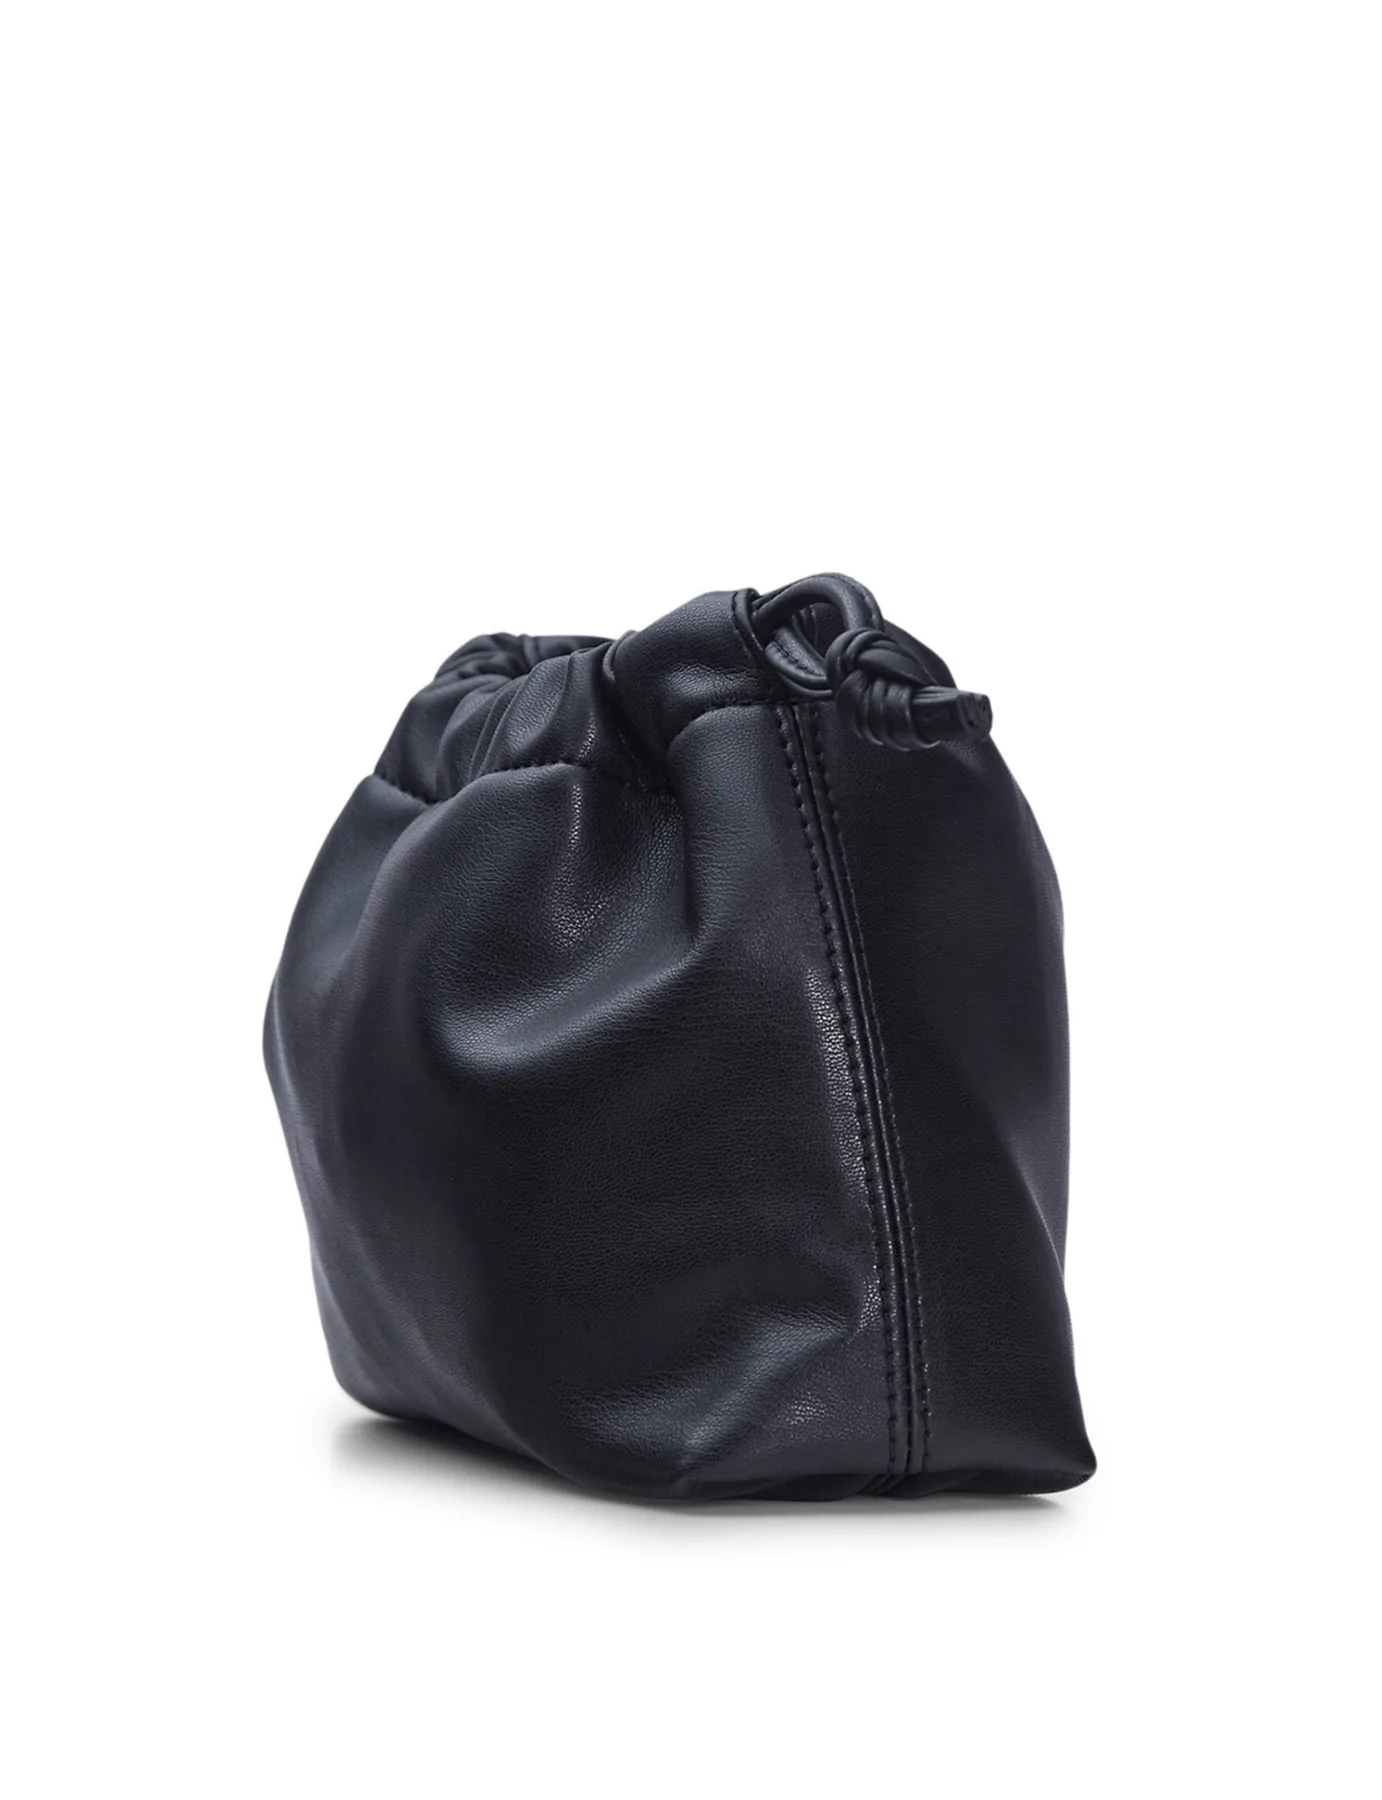 Brea Bag Large - Black